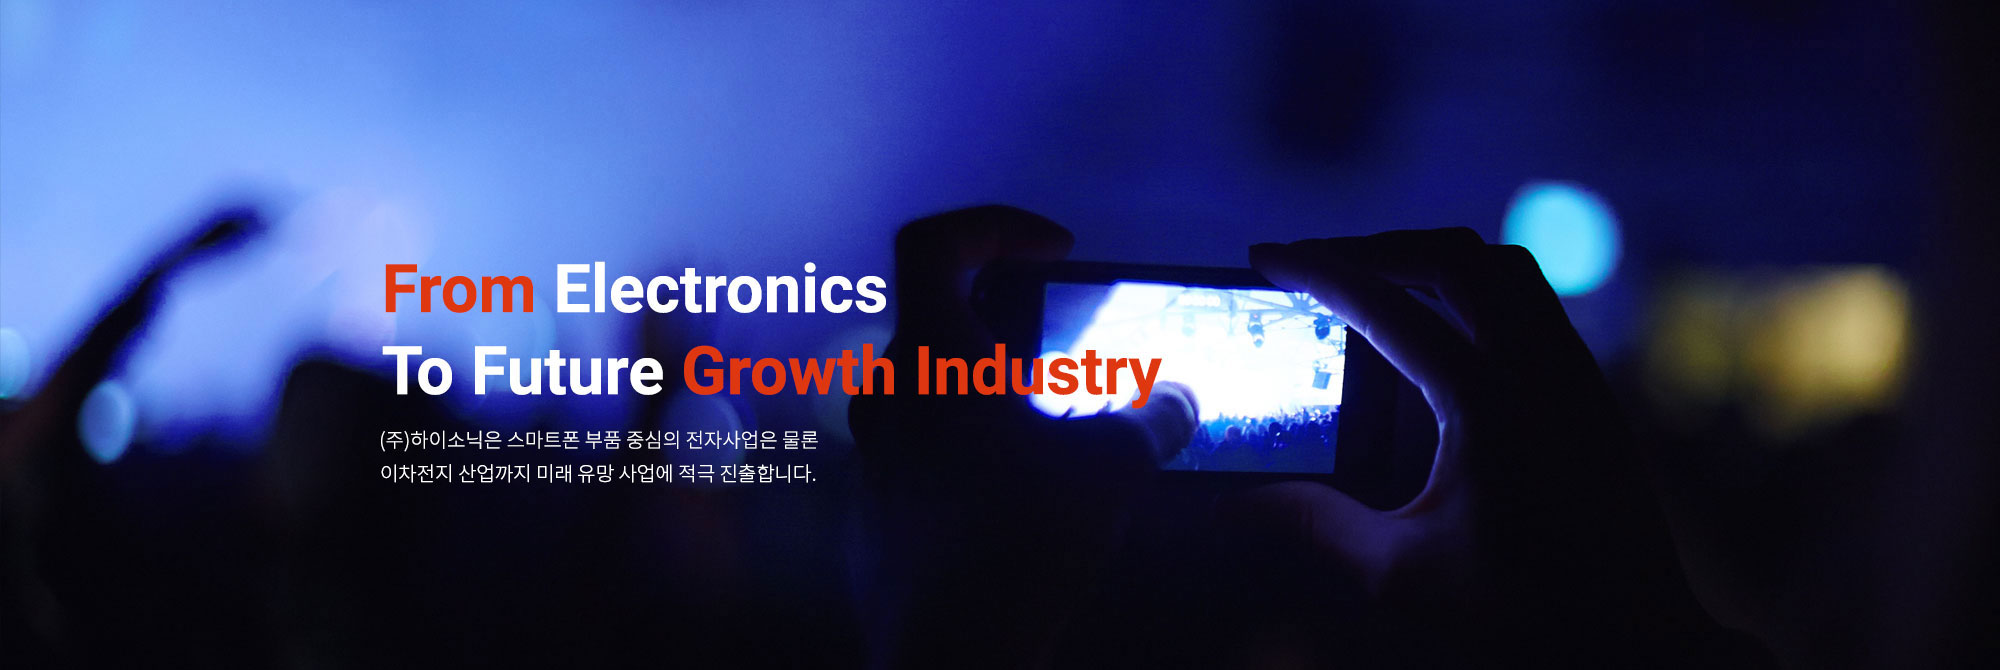 From Electronics to Future growth Industry (주)하이소닉은 스마트폰 부품 중심의 전자사업은 물론 친환경 에너지와 바이오산업까지 미래 유망 사업에 적극 진출합니다.